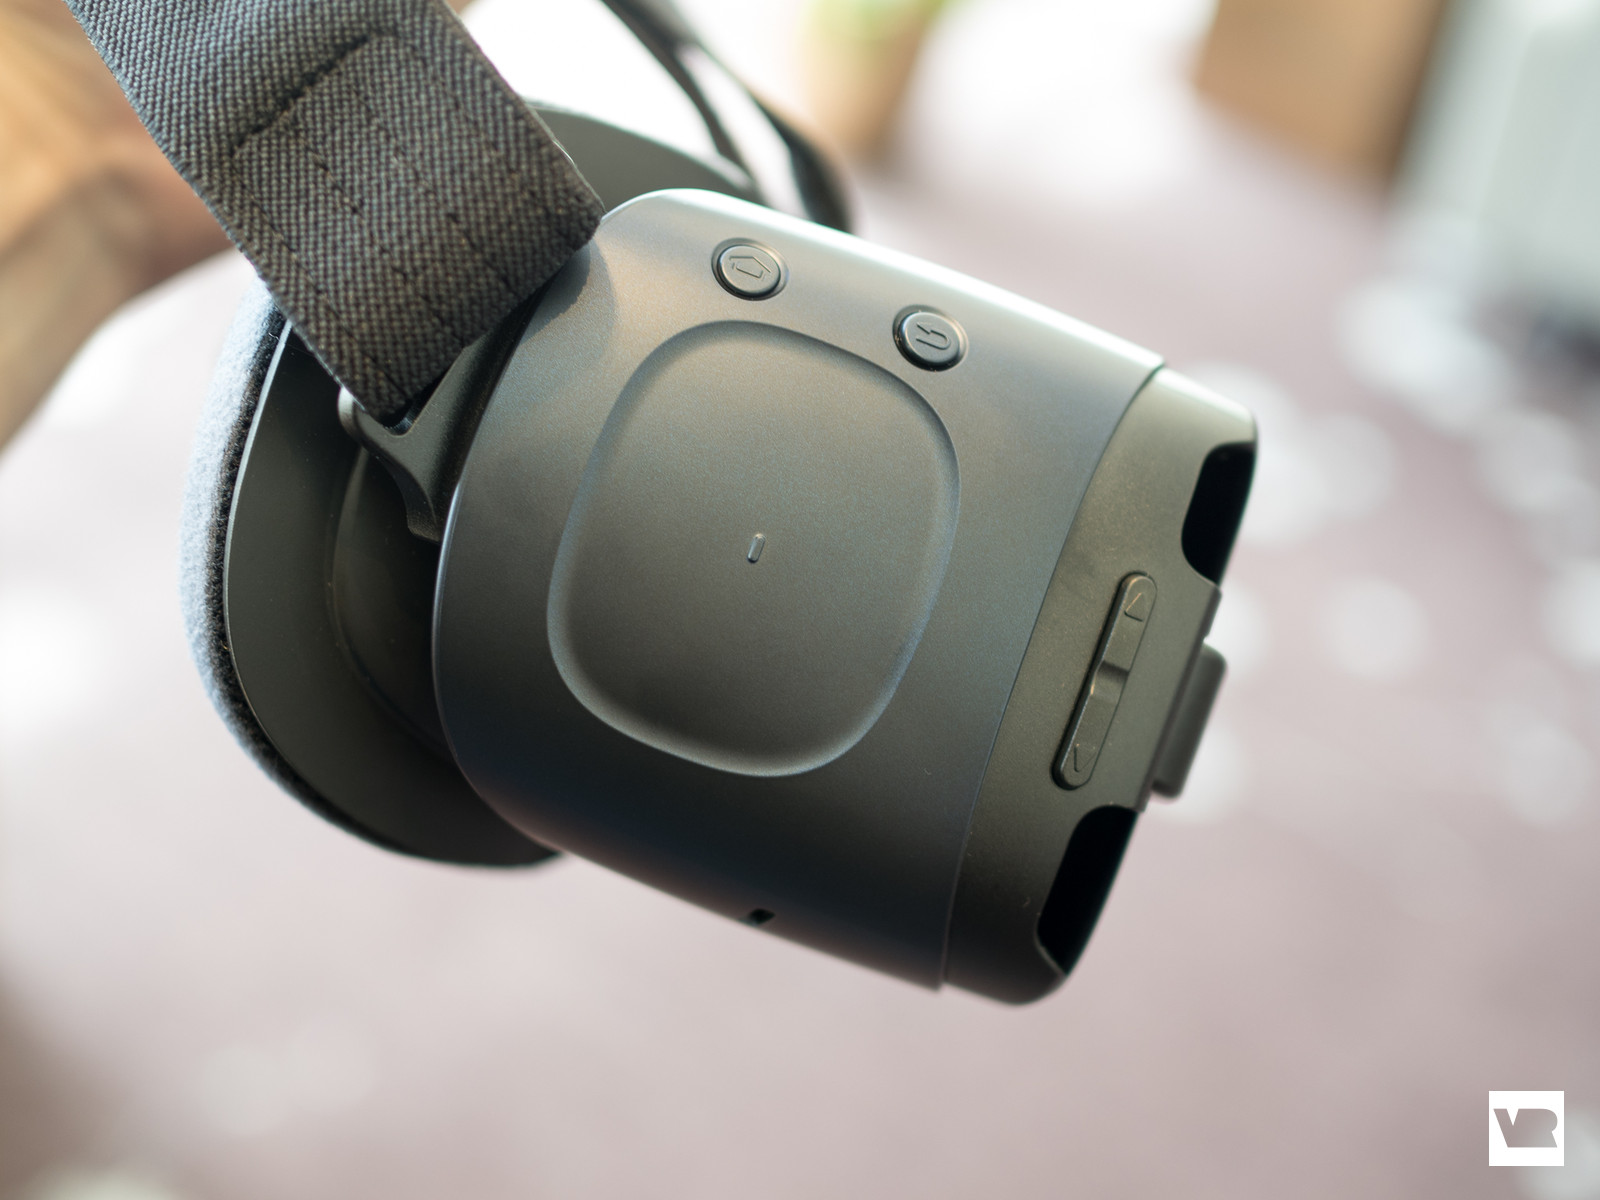 Cận cảnh Gear VR phiên bản mới với cổng USB-C